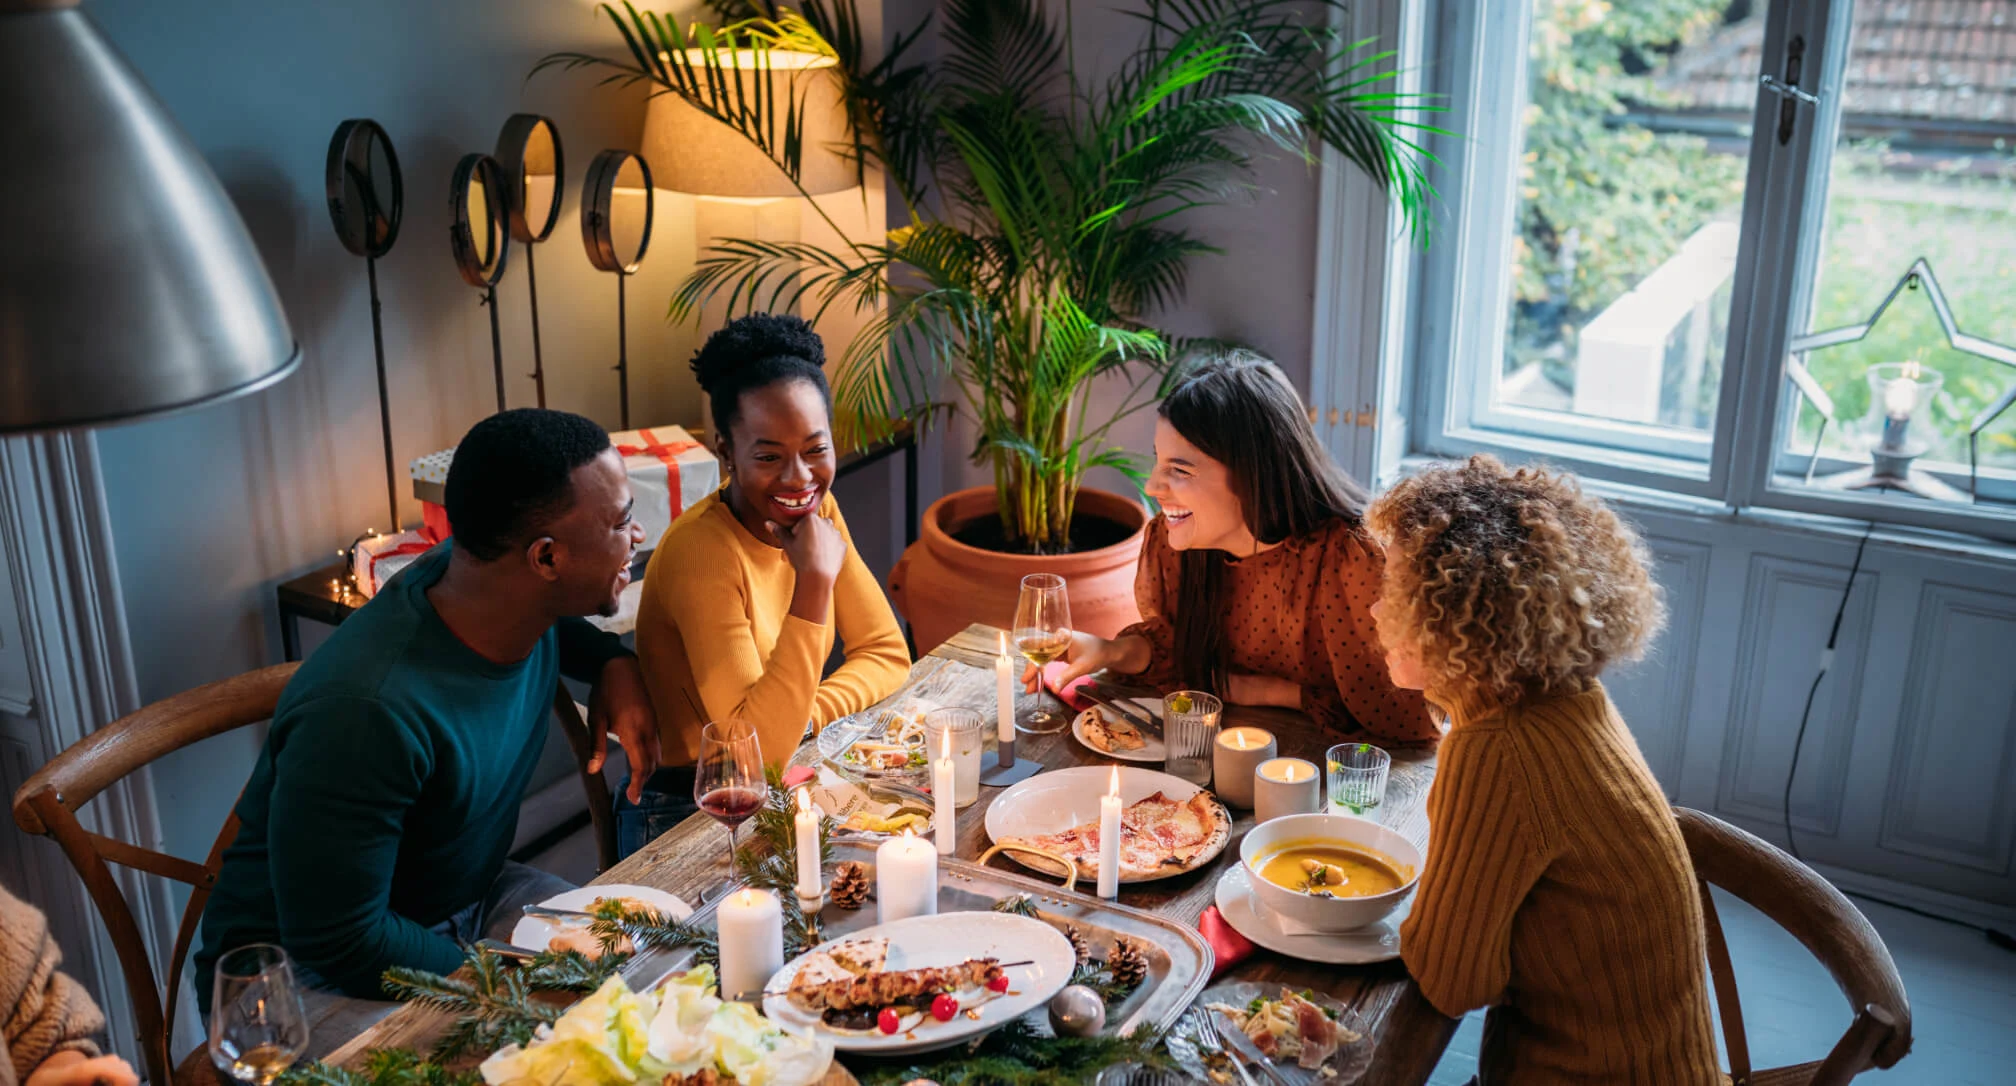 Quatro pessoas aparecem conversando ao redor de uma mesa de jantar. Sobre a mesa há vários pratos de comida e velas decorativas. É dia lá fora, como mostra a paisagem na janela.